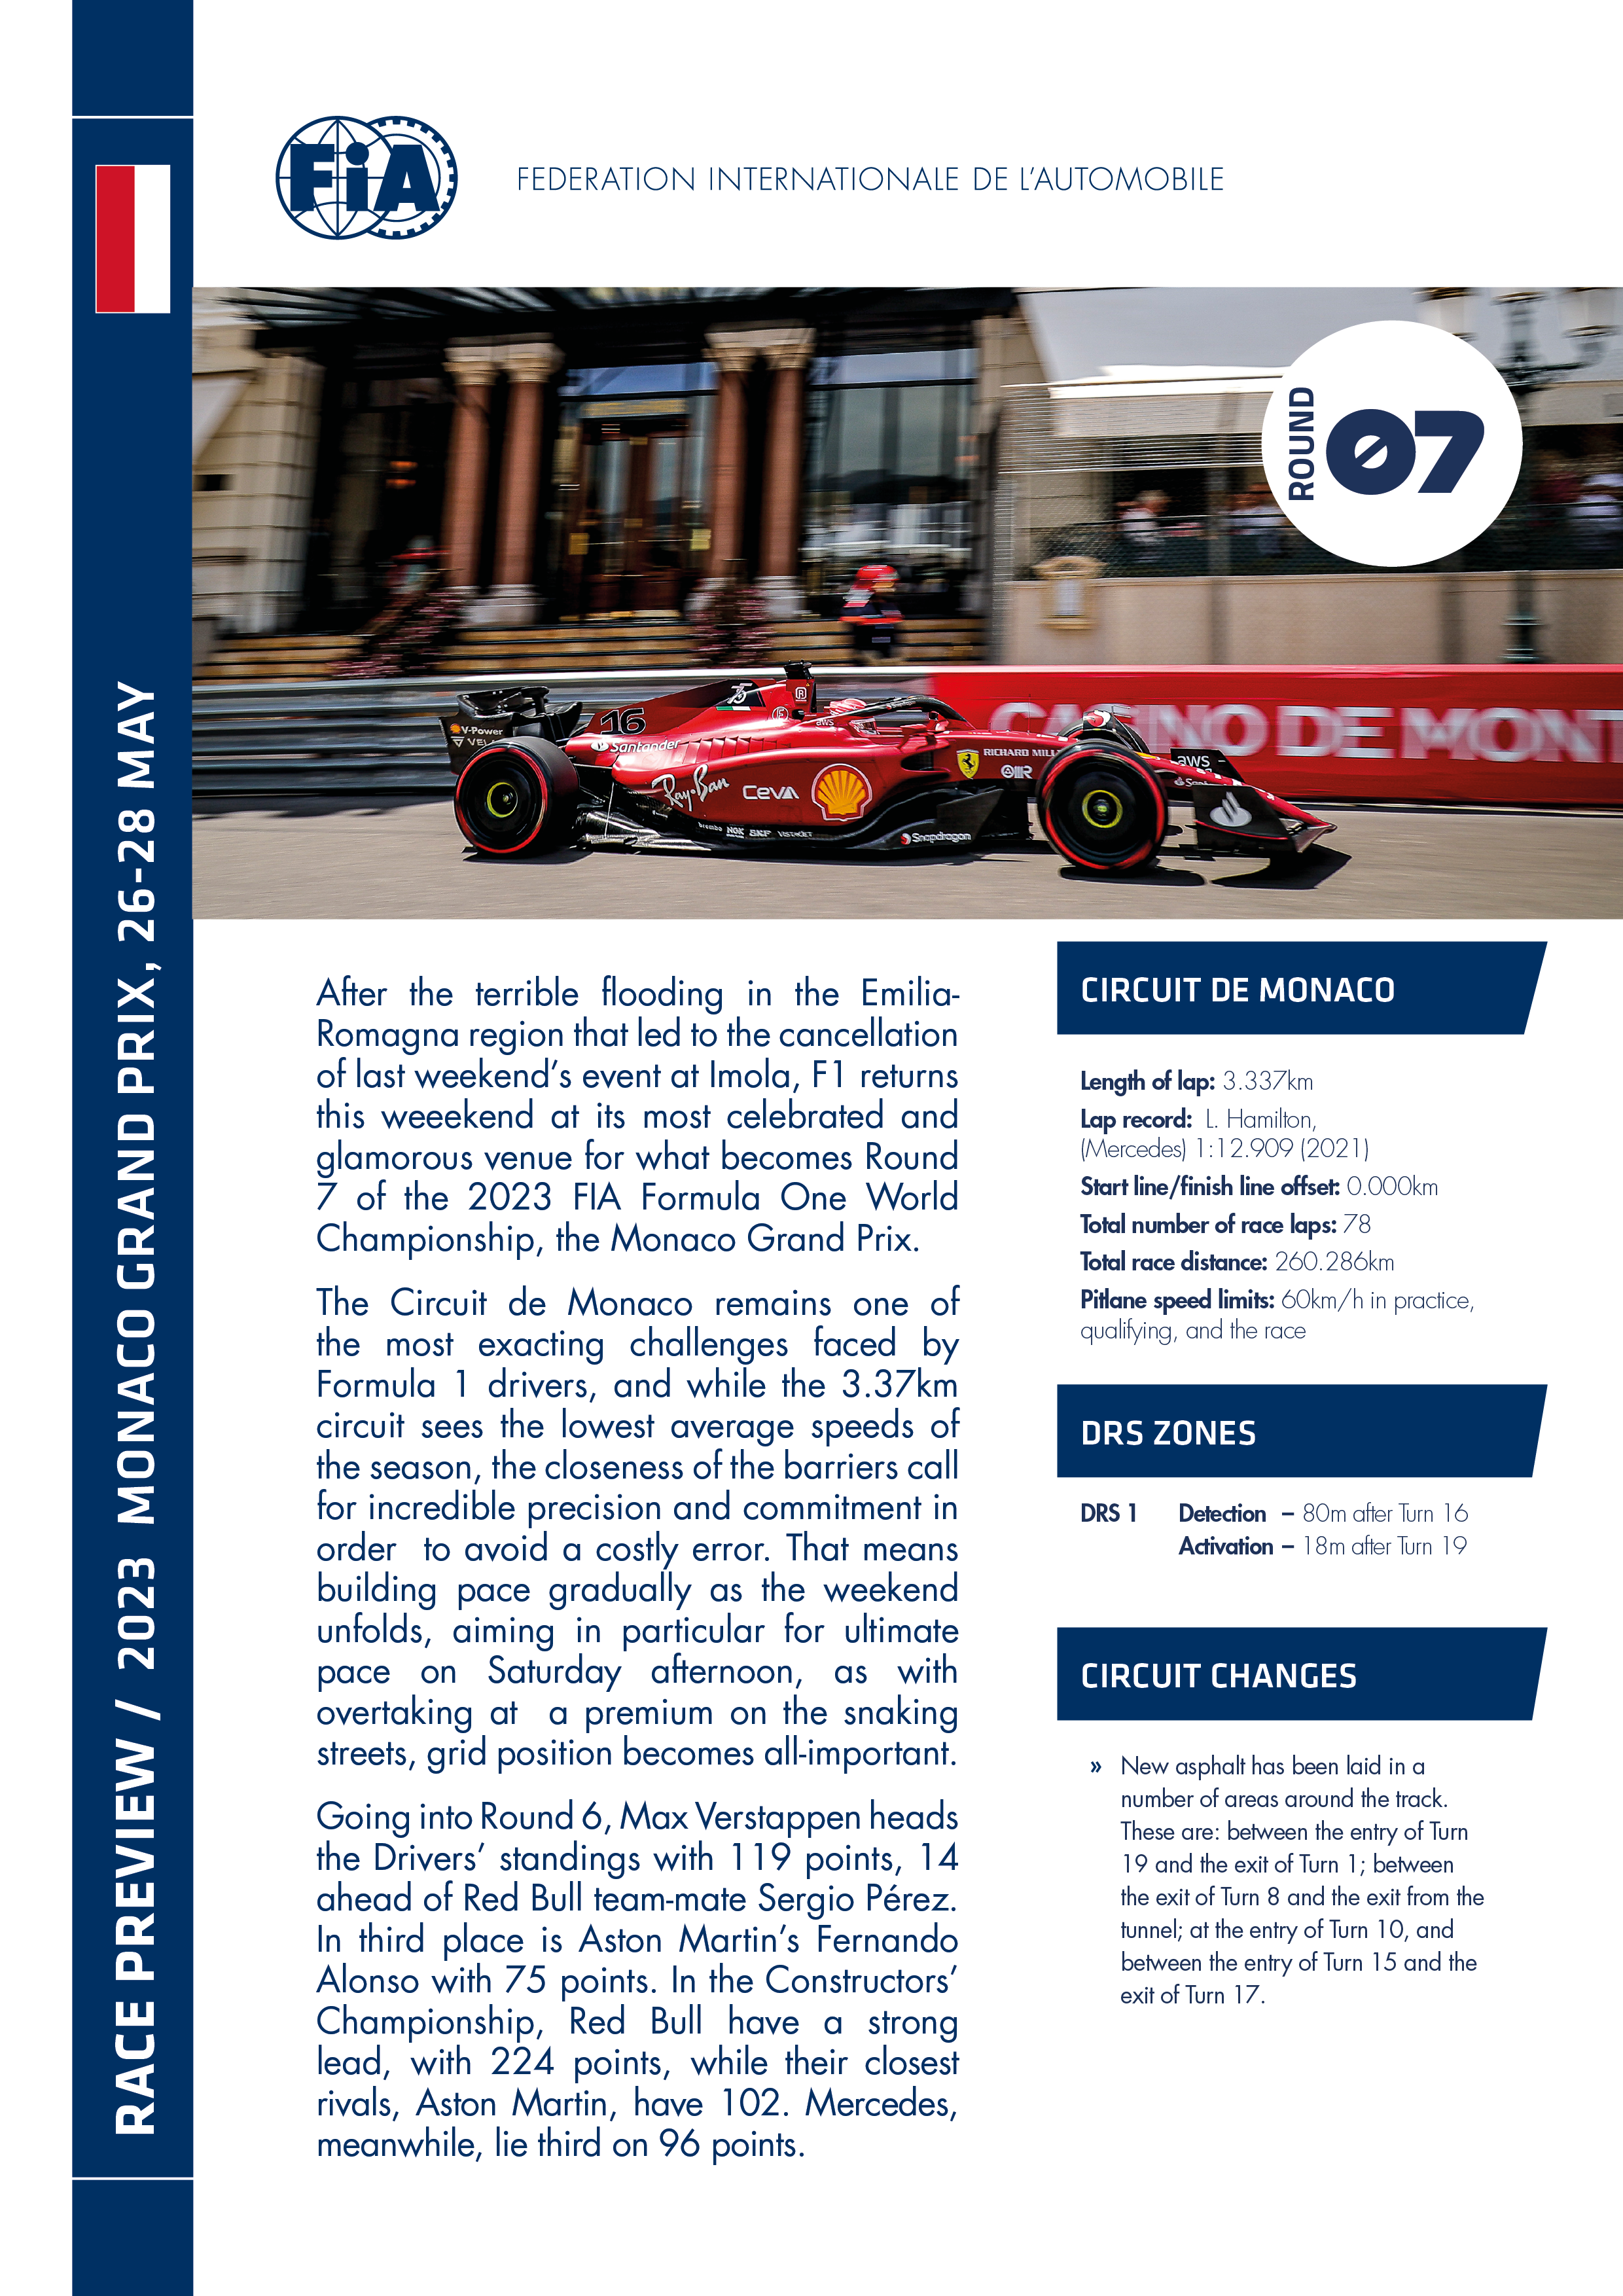 F1 - 2023 MONACO GRAND PRIX PREVIEW  Federation Internationale de  l'Automobile